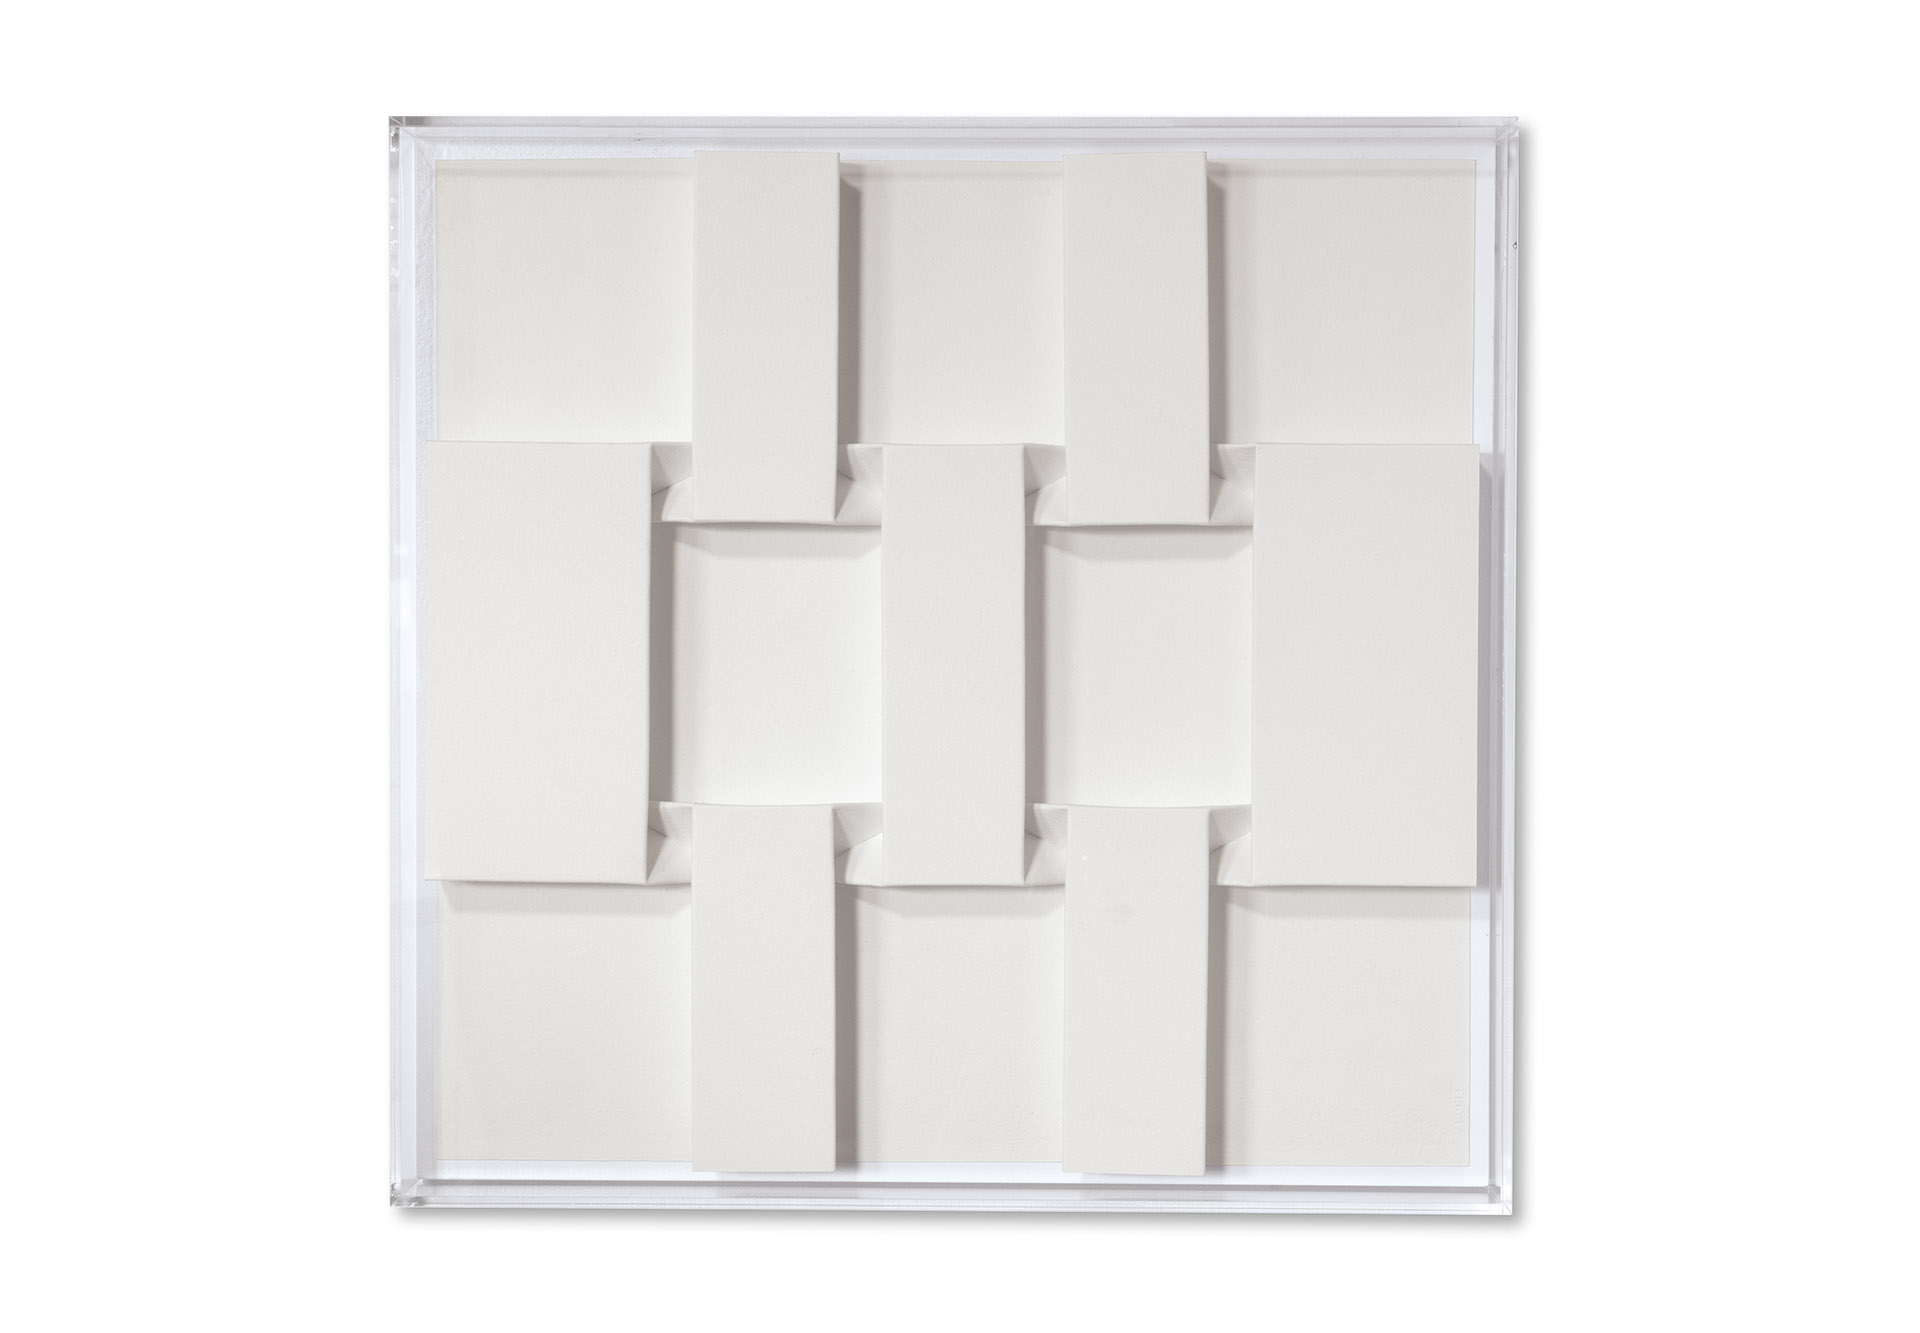 "Faltzustand R" – 2020, Arches Bütten gefaltet, Acrylglashaube, 51,5 x 53 cm